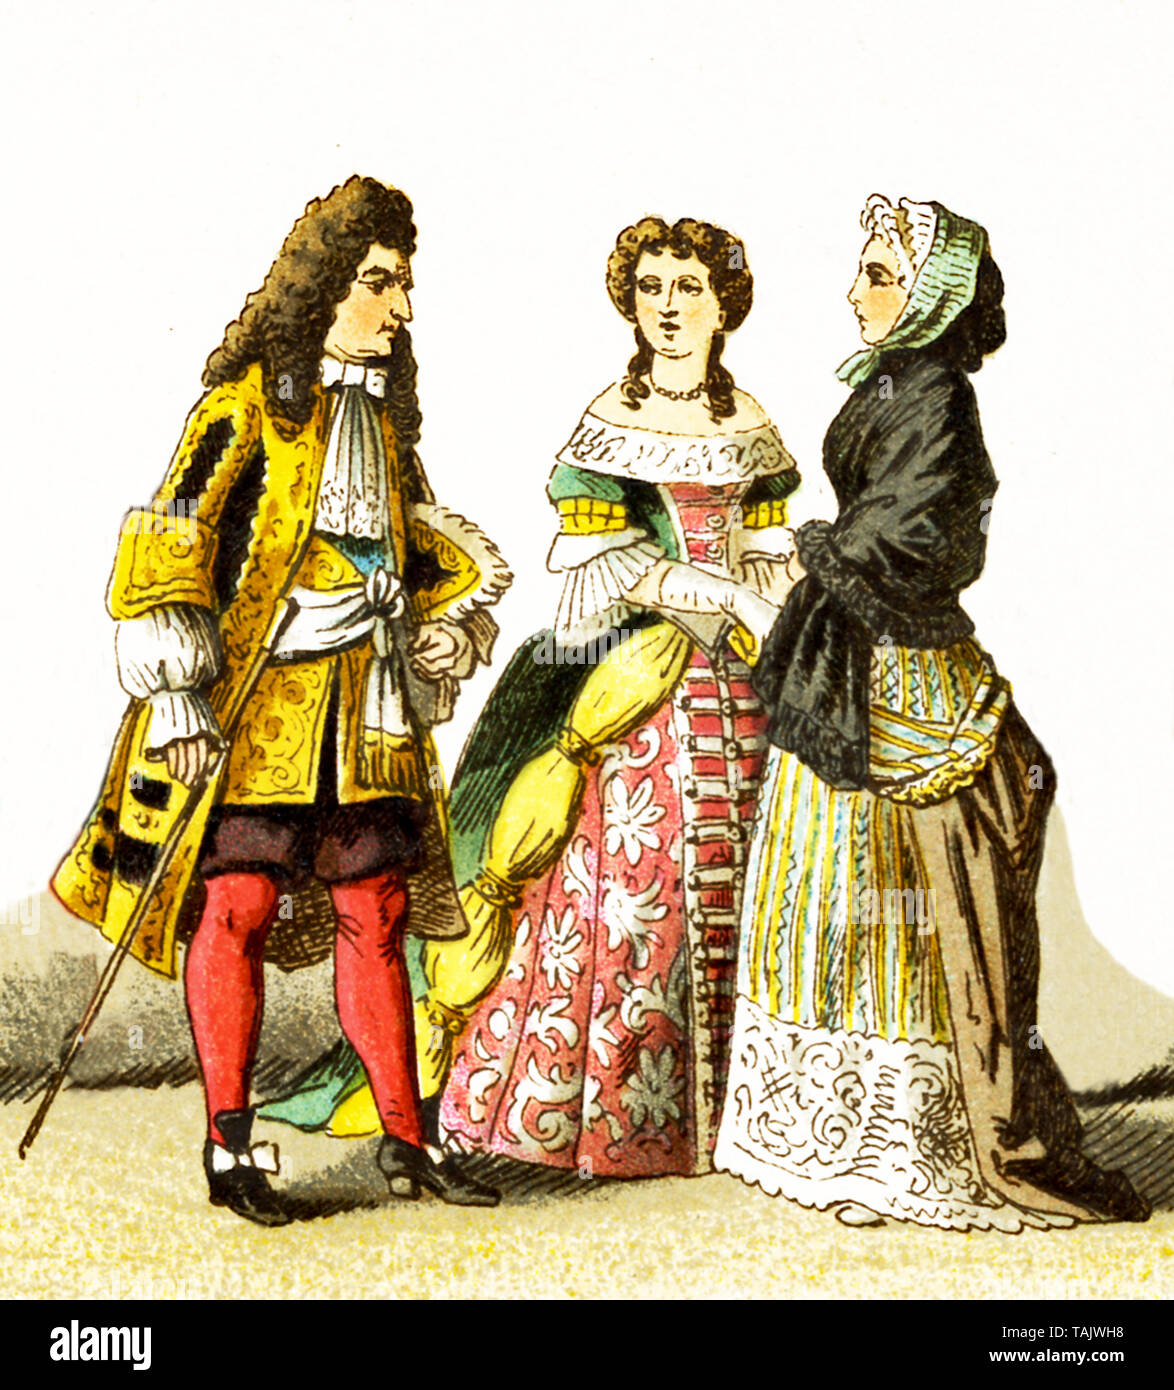 Le figure qui rappresentate sono il popolo francese intorno al 1600. Essi sono, da sinistra a destra: Luigi XIV nel 1680, signora di rango, signora di rango in semplici vestiti. L'illustrazione risale al 1882. Foto Stock